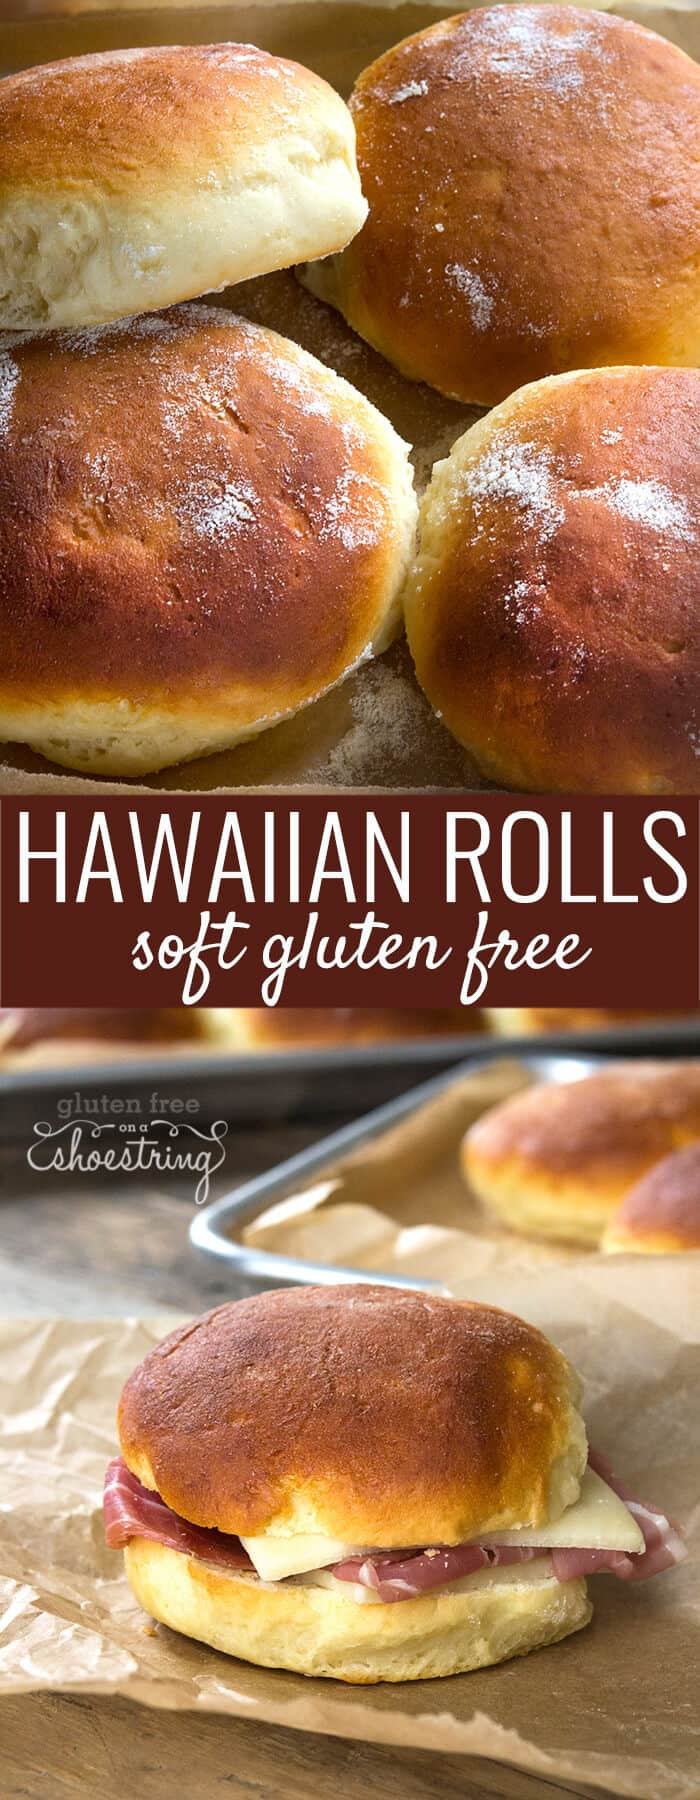 Gluten Free Bread Rolls
 Gluten Free Hawaiian Rolls Recipe from Bakes Bread with